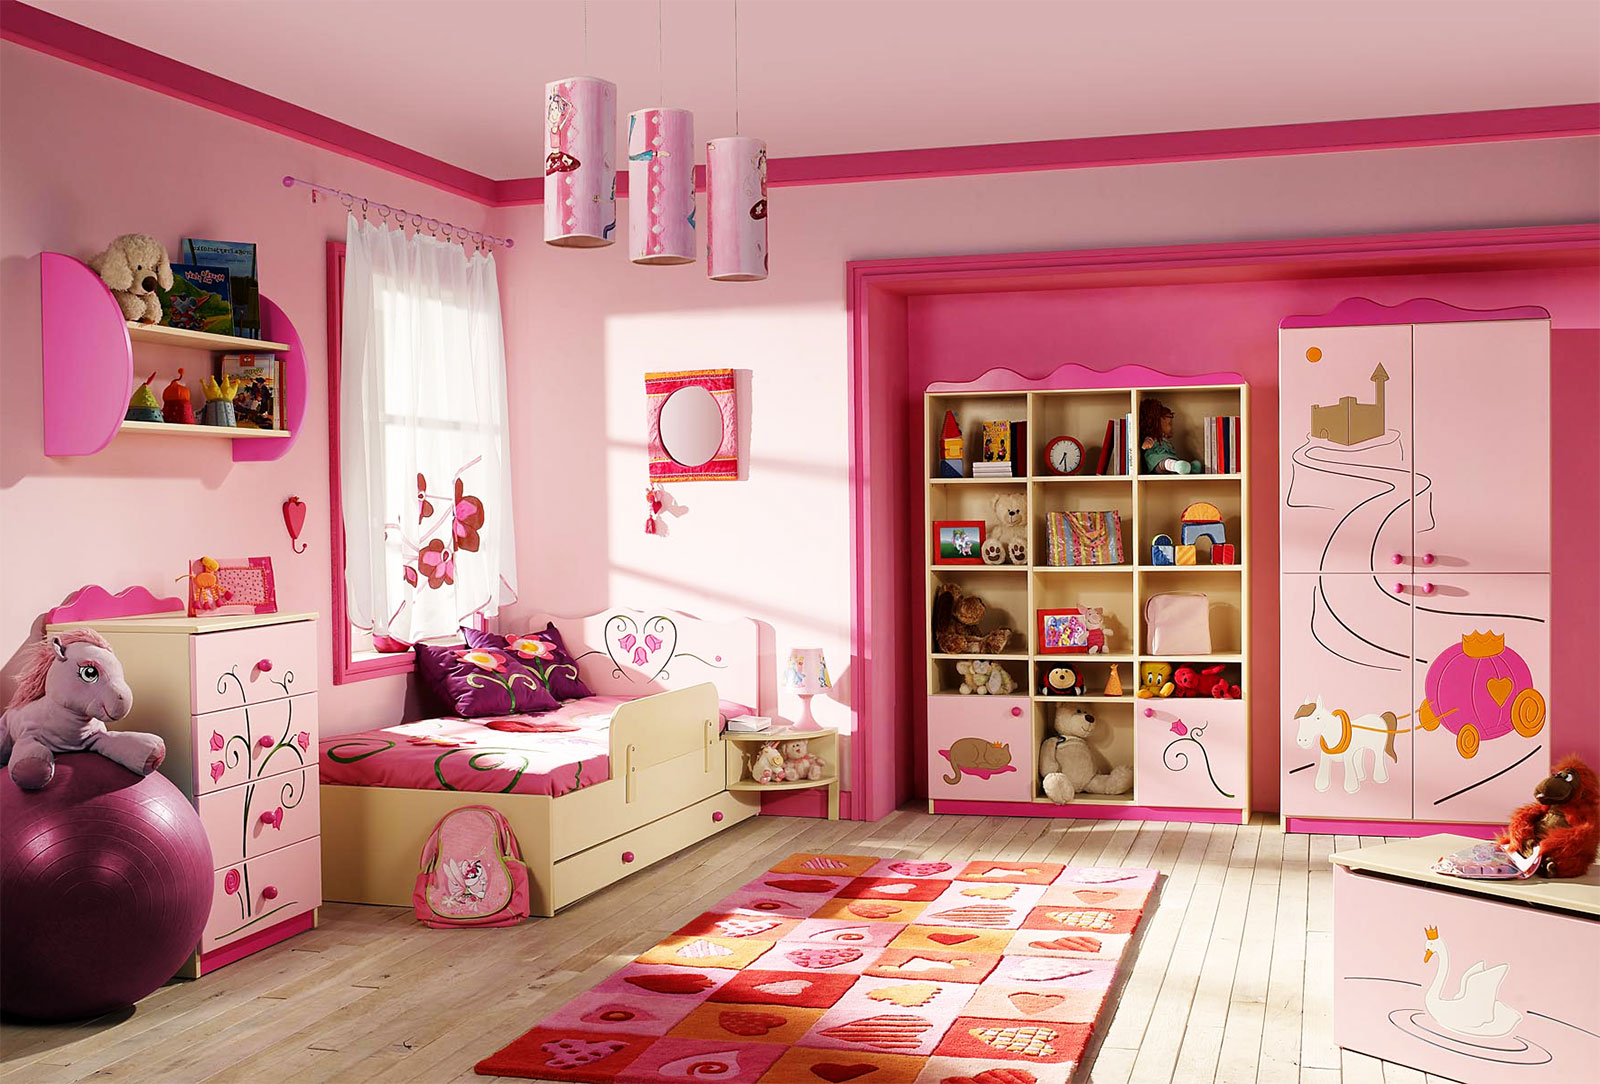 pink kids bedroom furniture